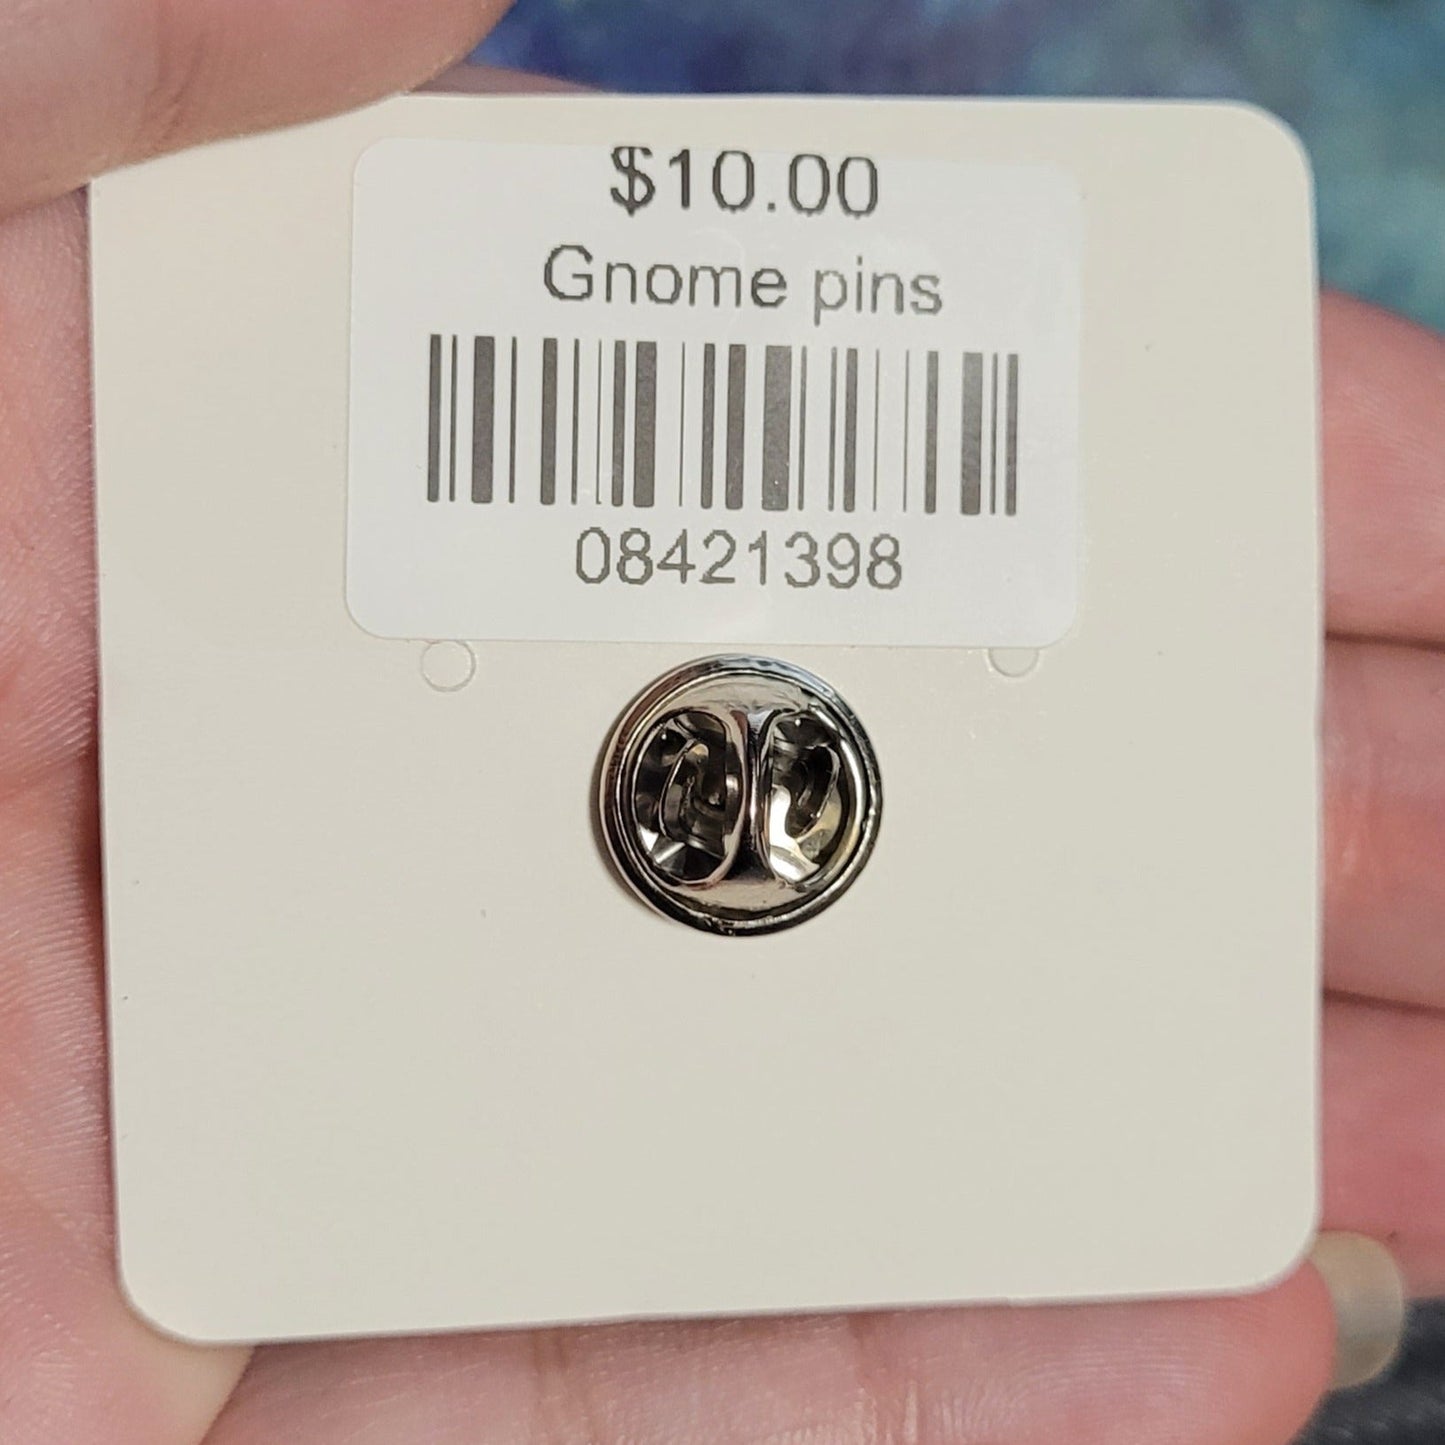 Gnome pins - IndigiNature